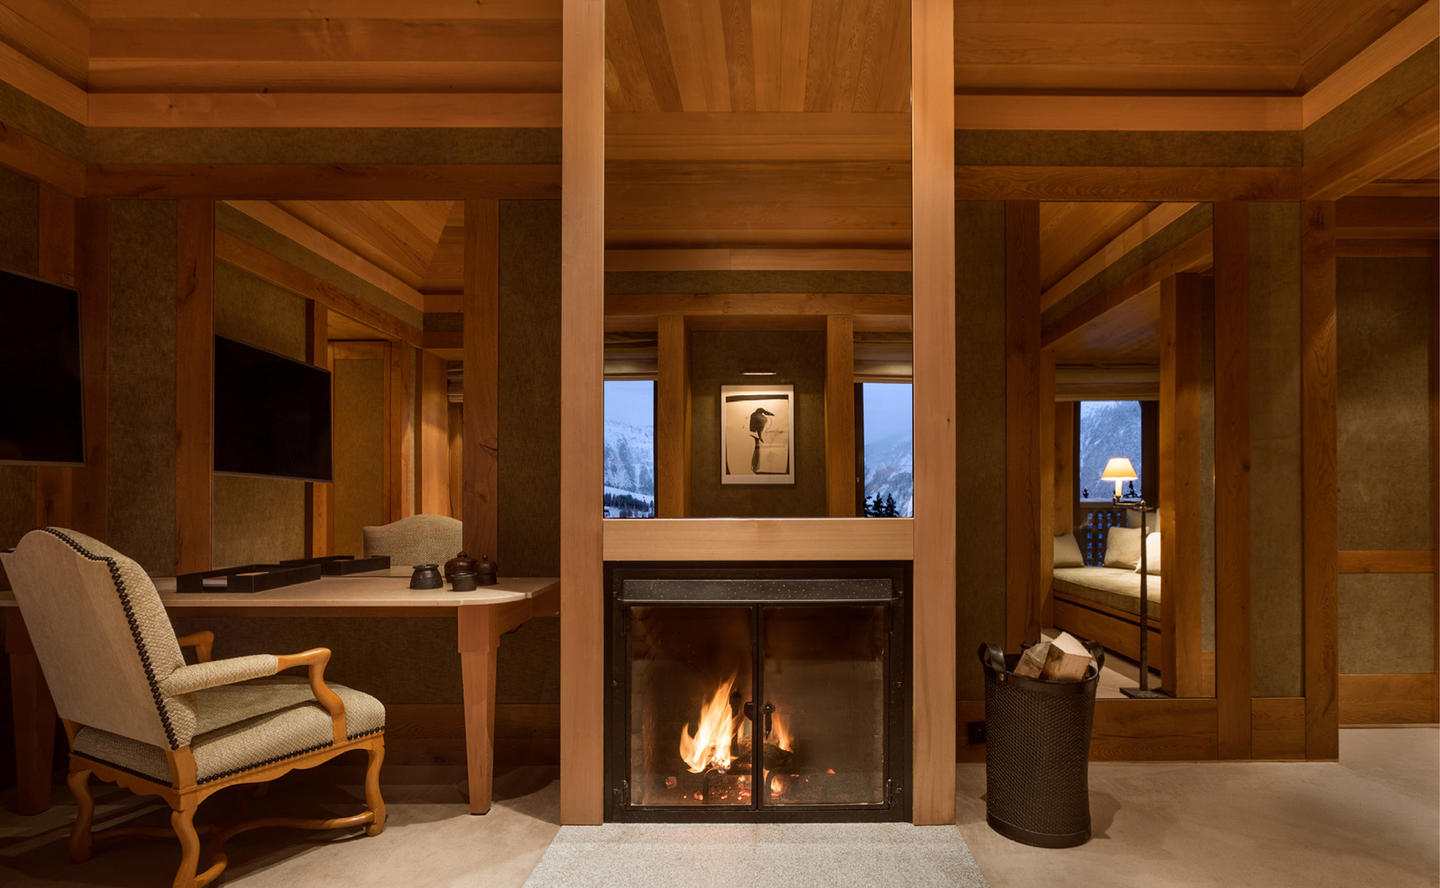 Fireplace in Living Area, Suite La Vanoise, Aman Le Melezin, France